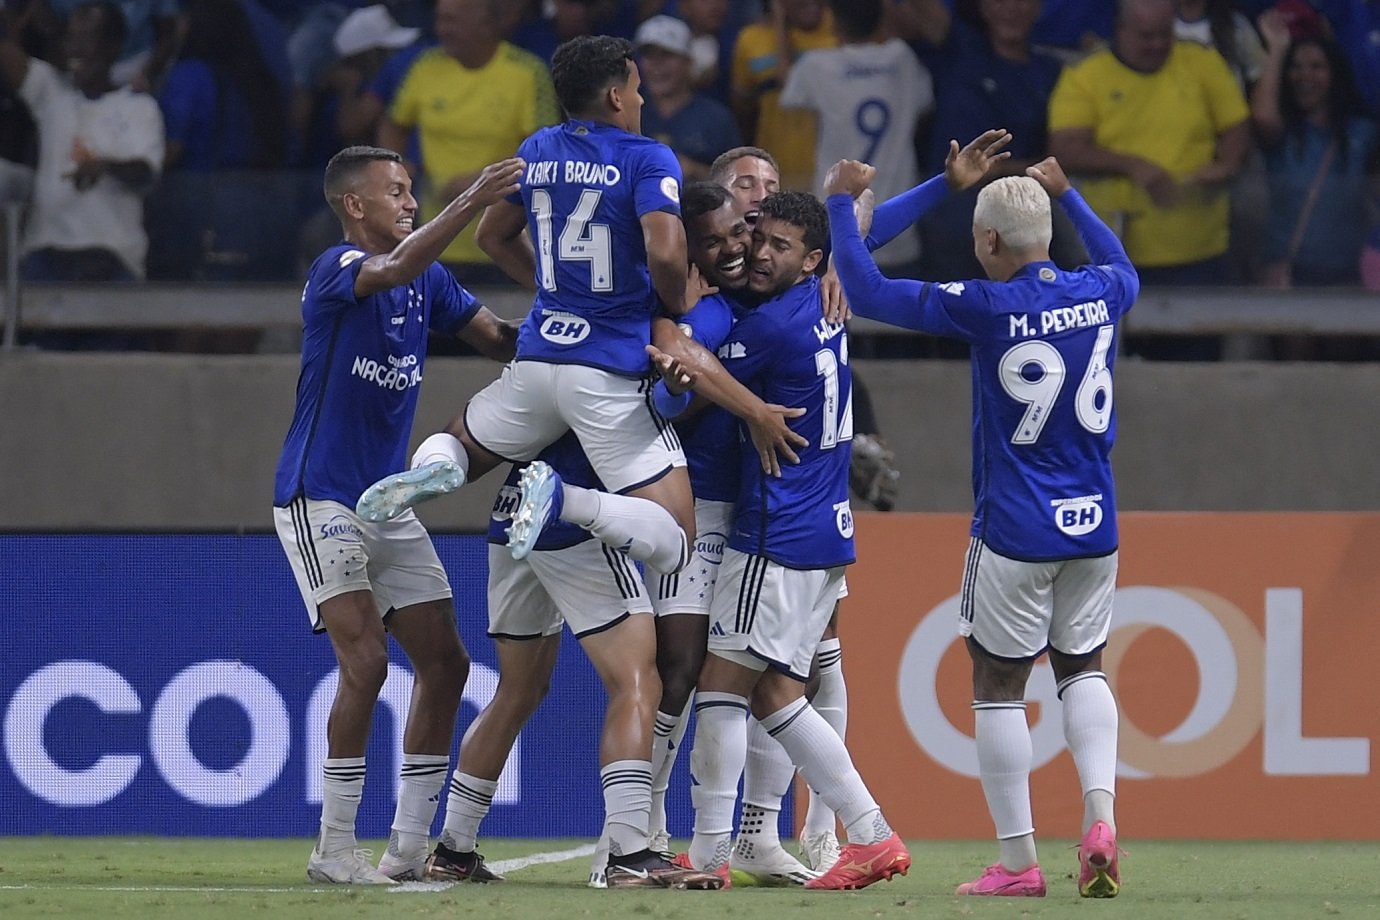 O Cruzeiro chega na 9ª posição, com 2133 pontos.